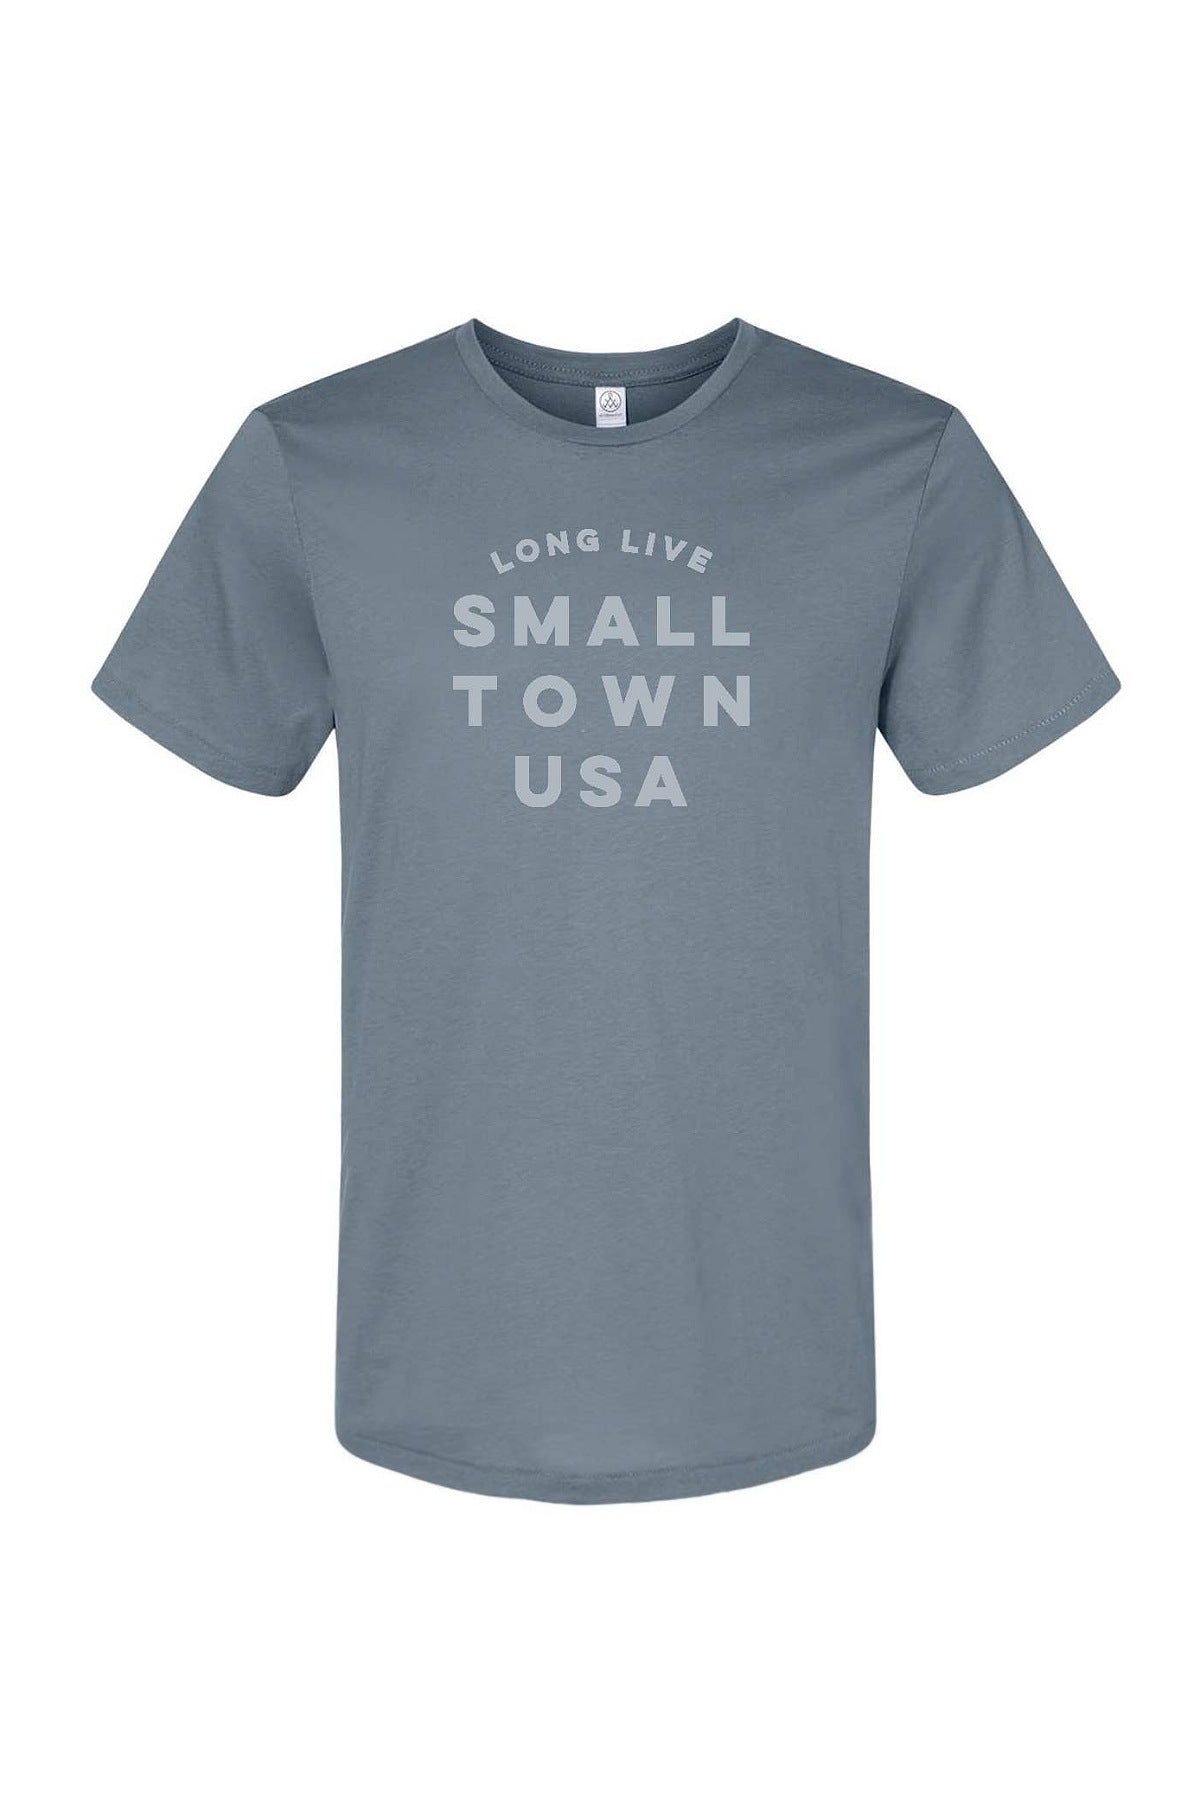 Long Live Small Town USA Tee